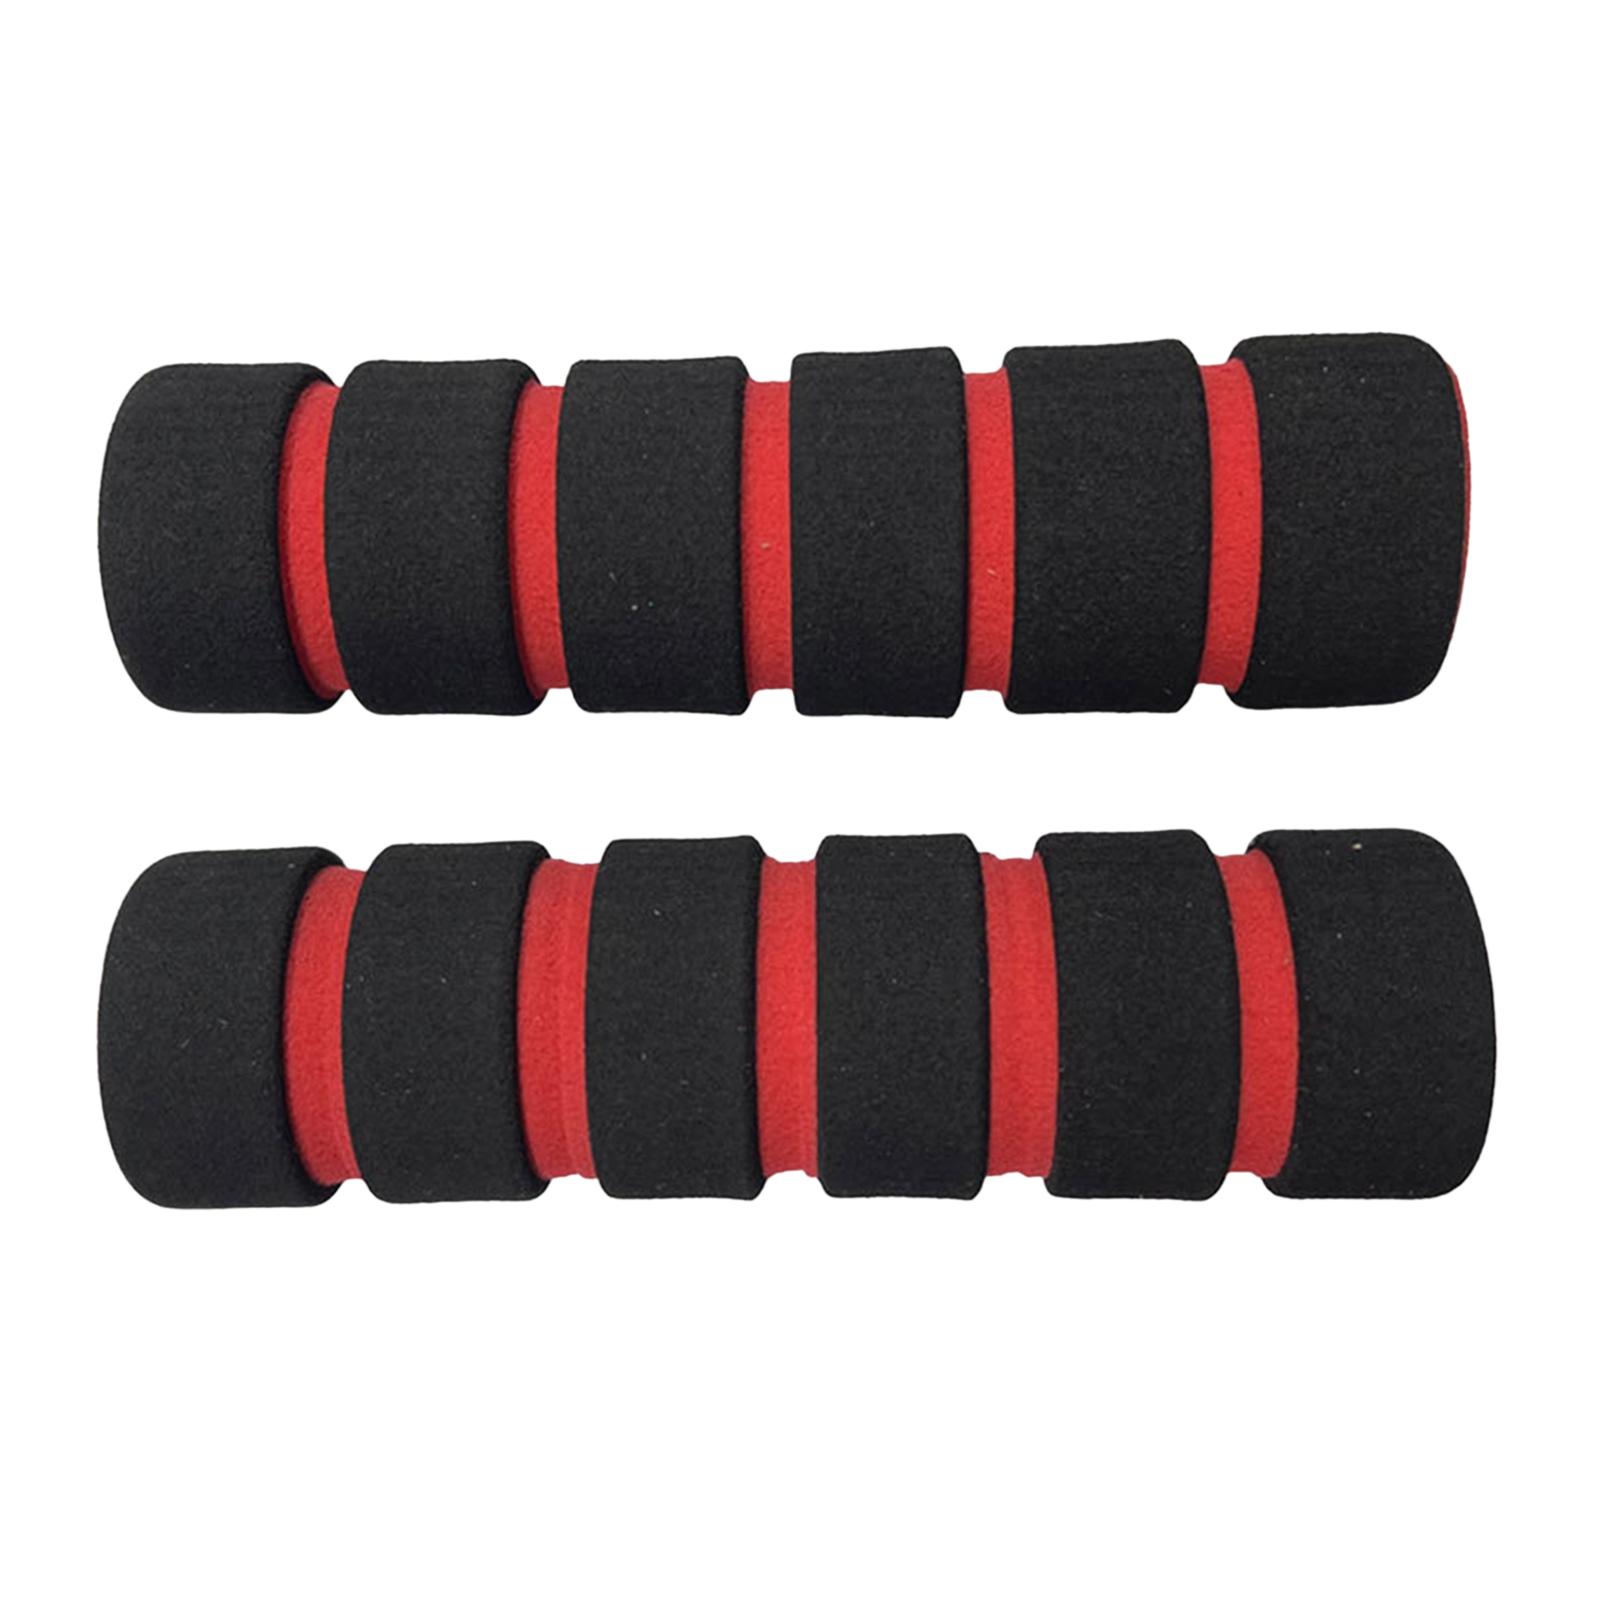 Sponge Foam Sleeve Fitness Equipment for Strength Training Workout Bench Armrest Red